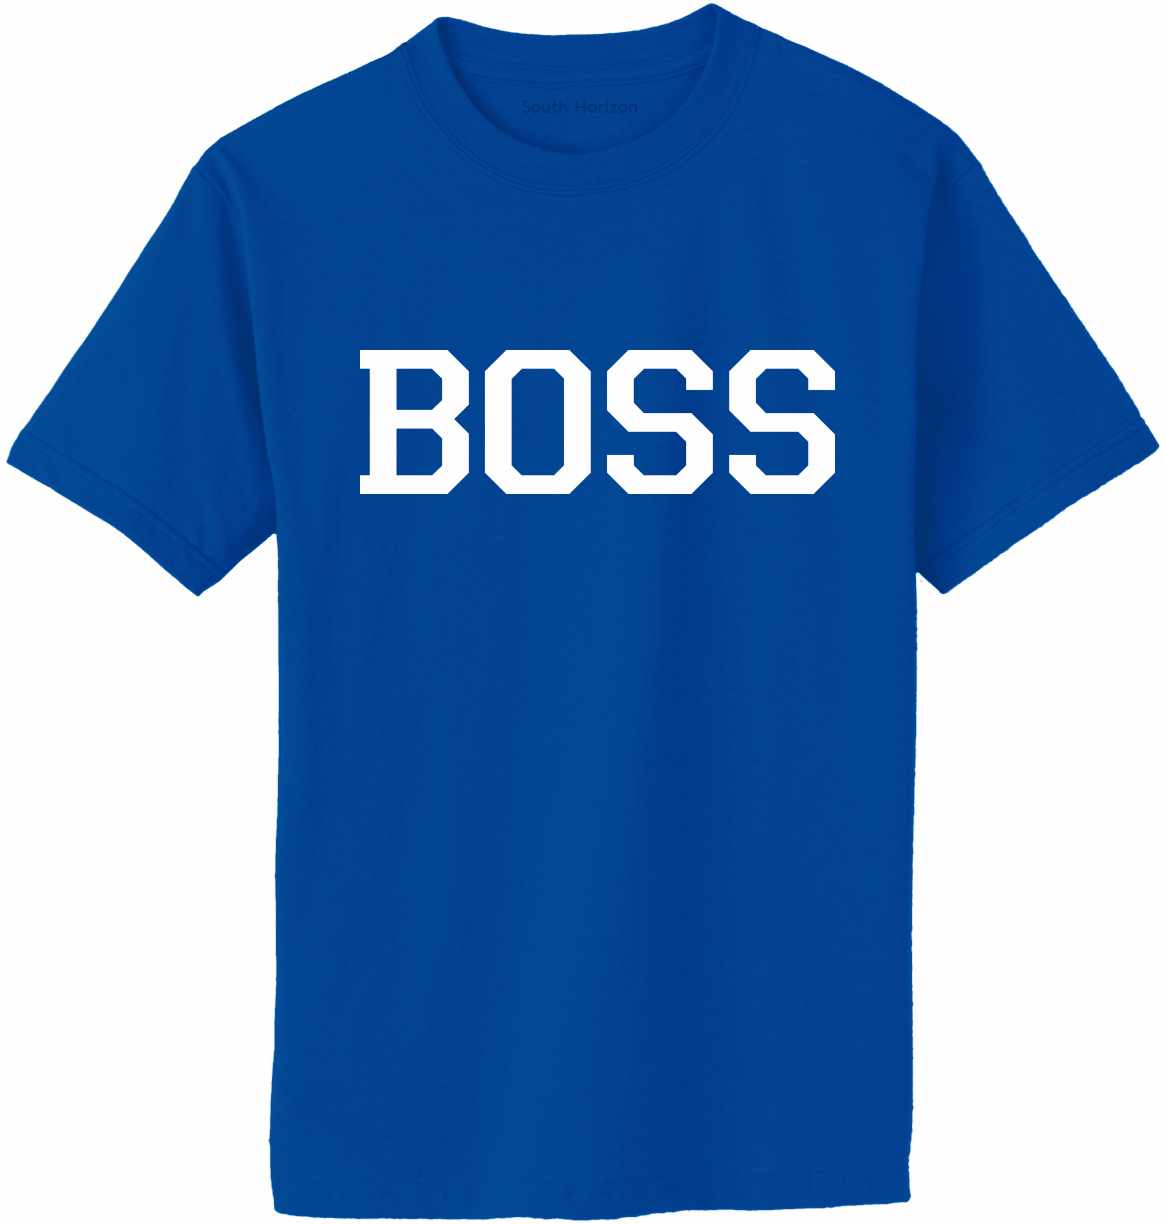 BOSS Adult T-Shirt